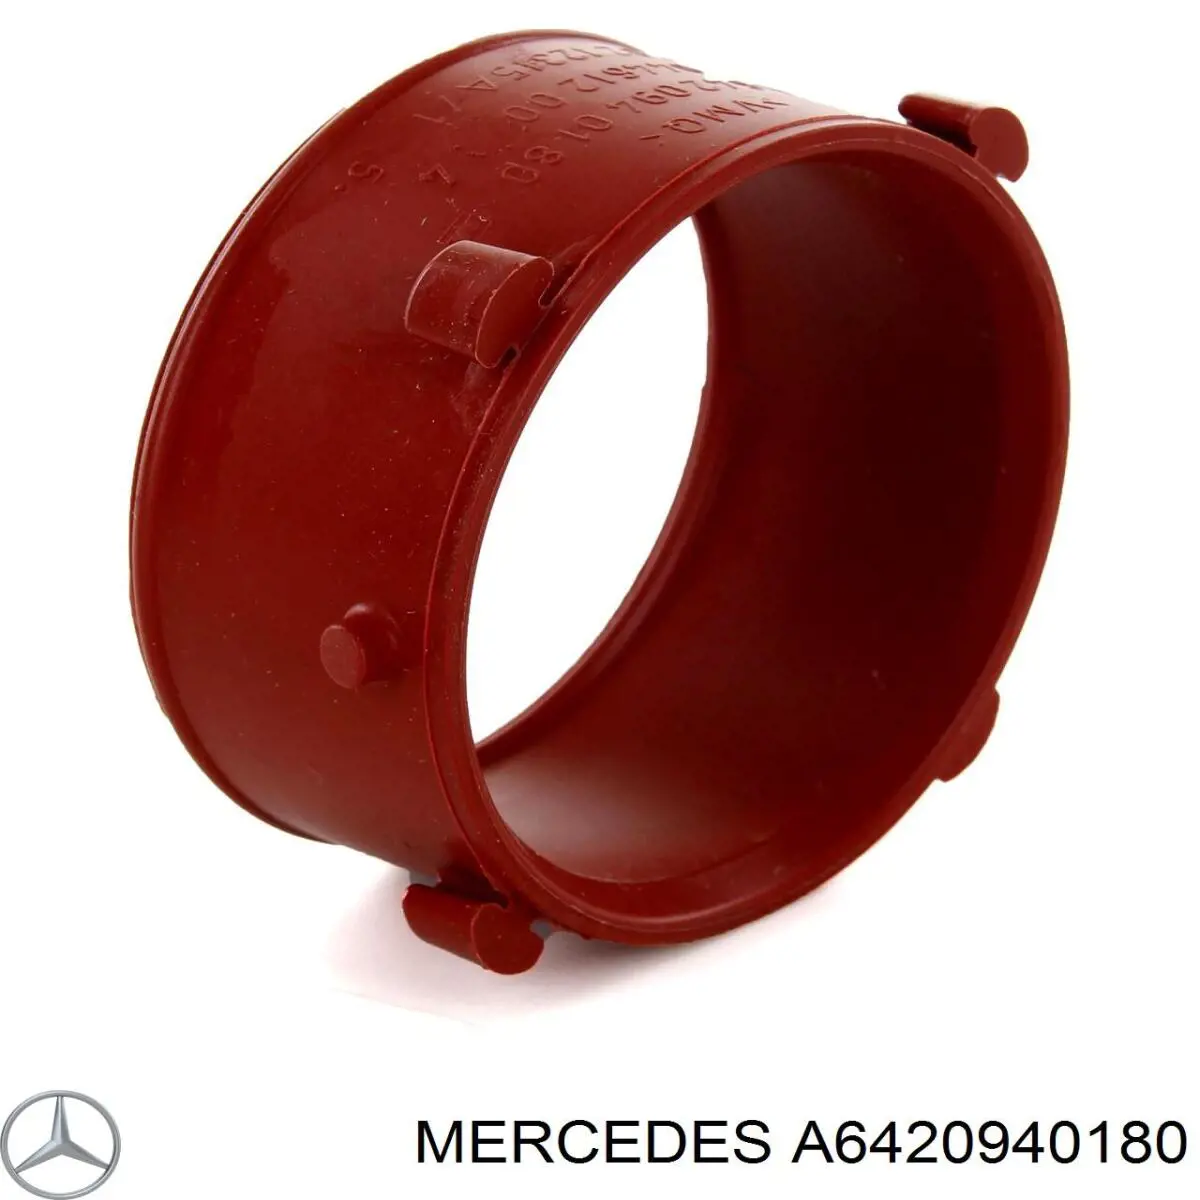 A6420940180 Mercedes junta de turbina, flexible inserto